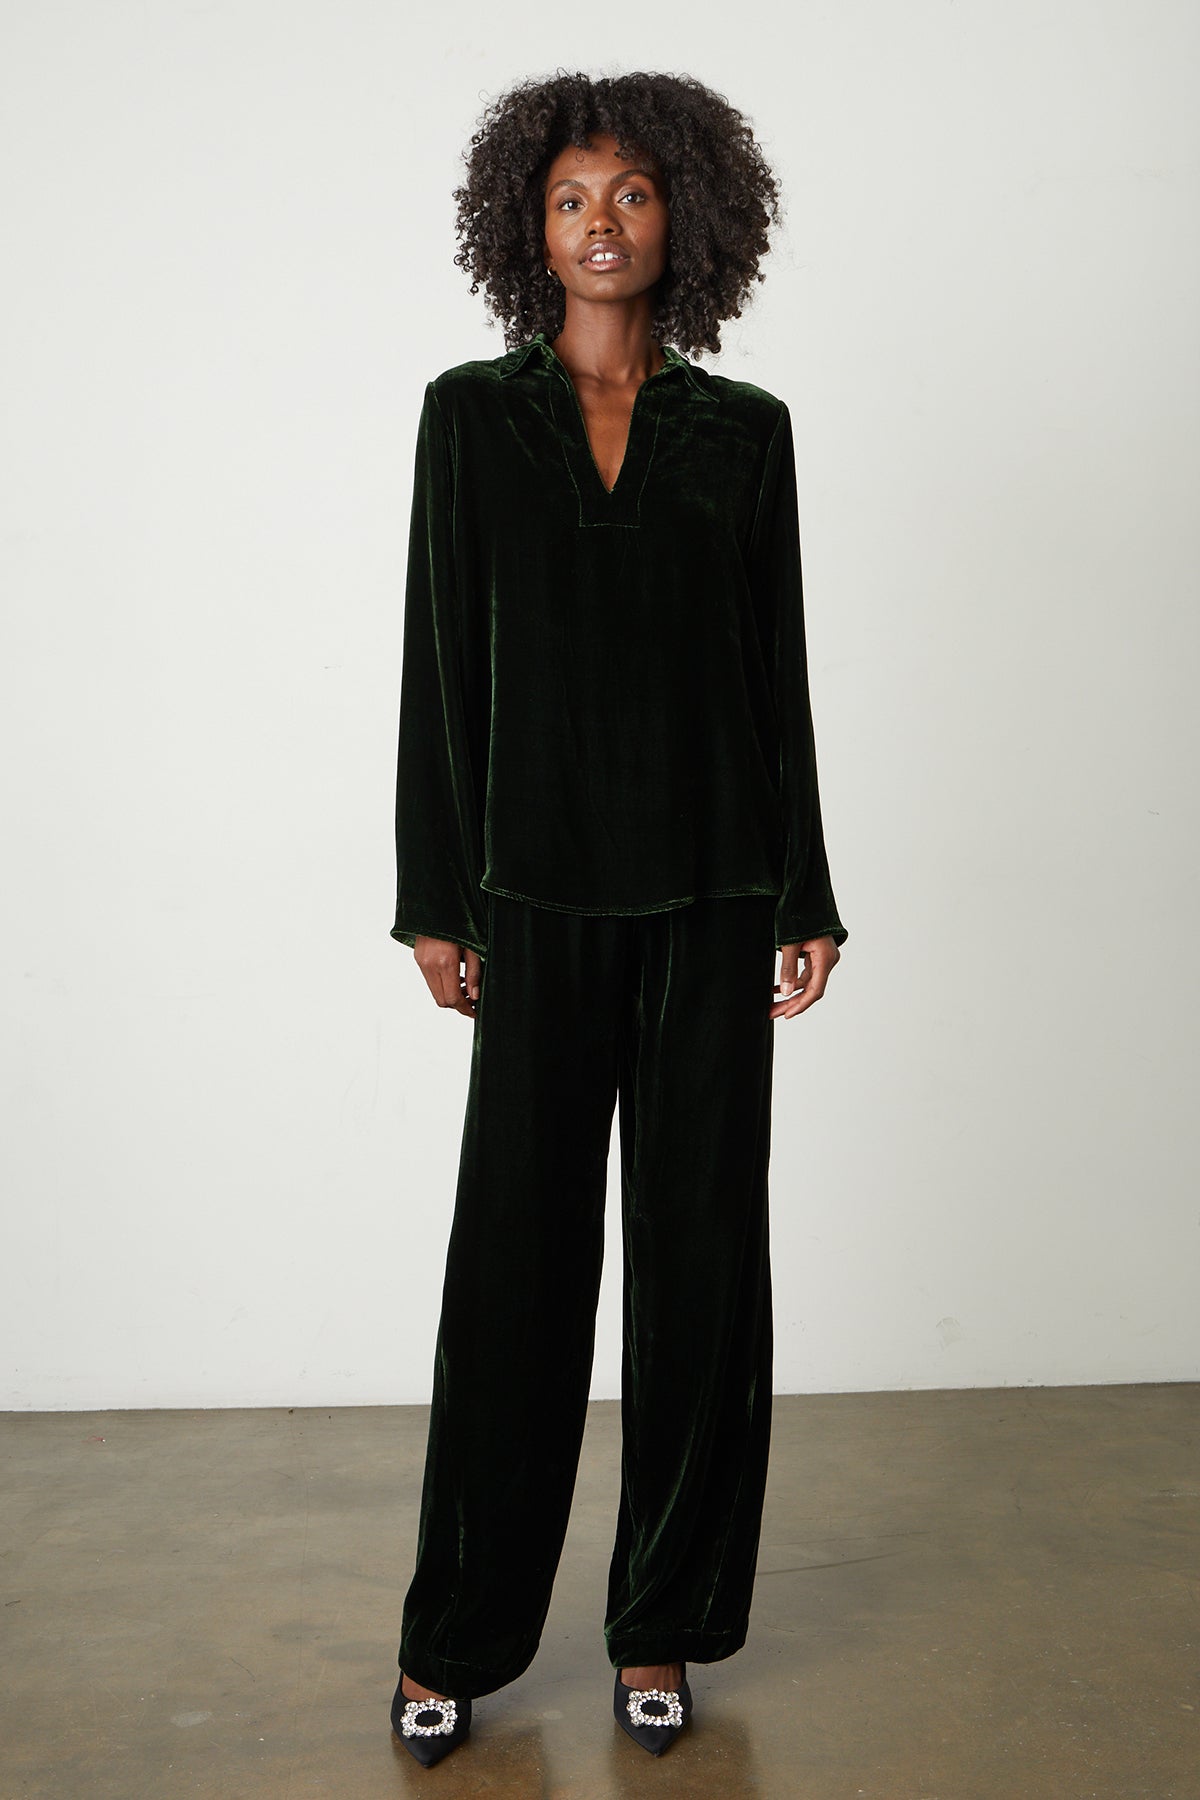 Jordy Silk Velvet Collar Top in fern green with Frida pants full length fron-25548658507969